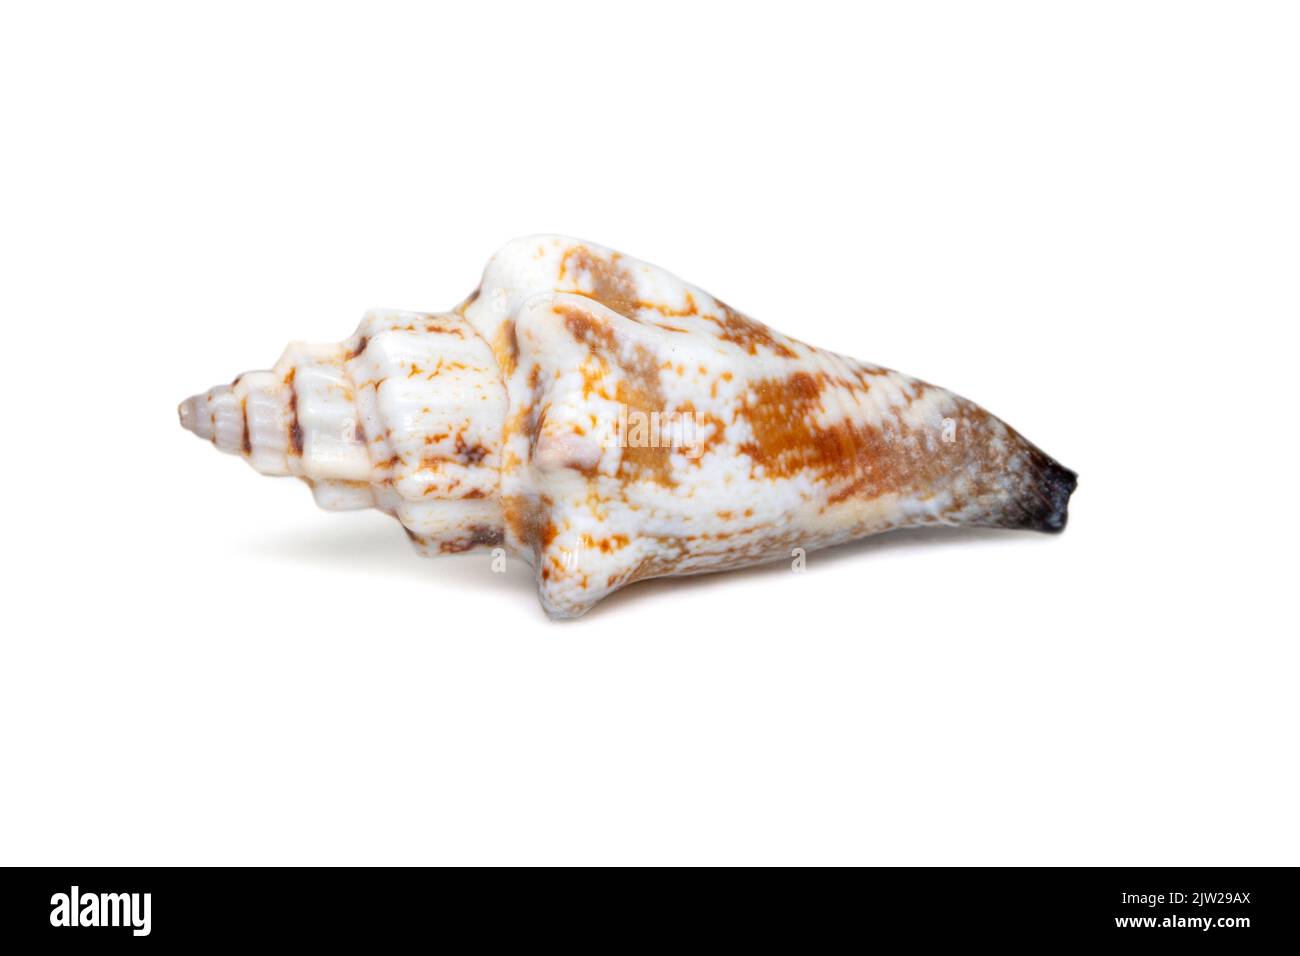 Image du canarium urceus est une espèce d'escargot de mer, un mollusque gastéropode marin de la famille des strombidae, les vrais conchs sur fond blanc. Rouge se Banque D'Images